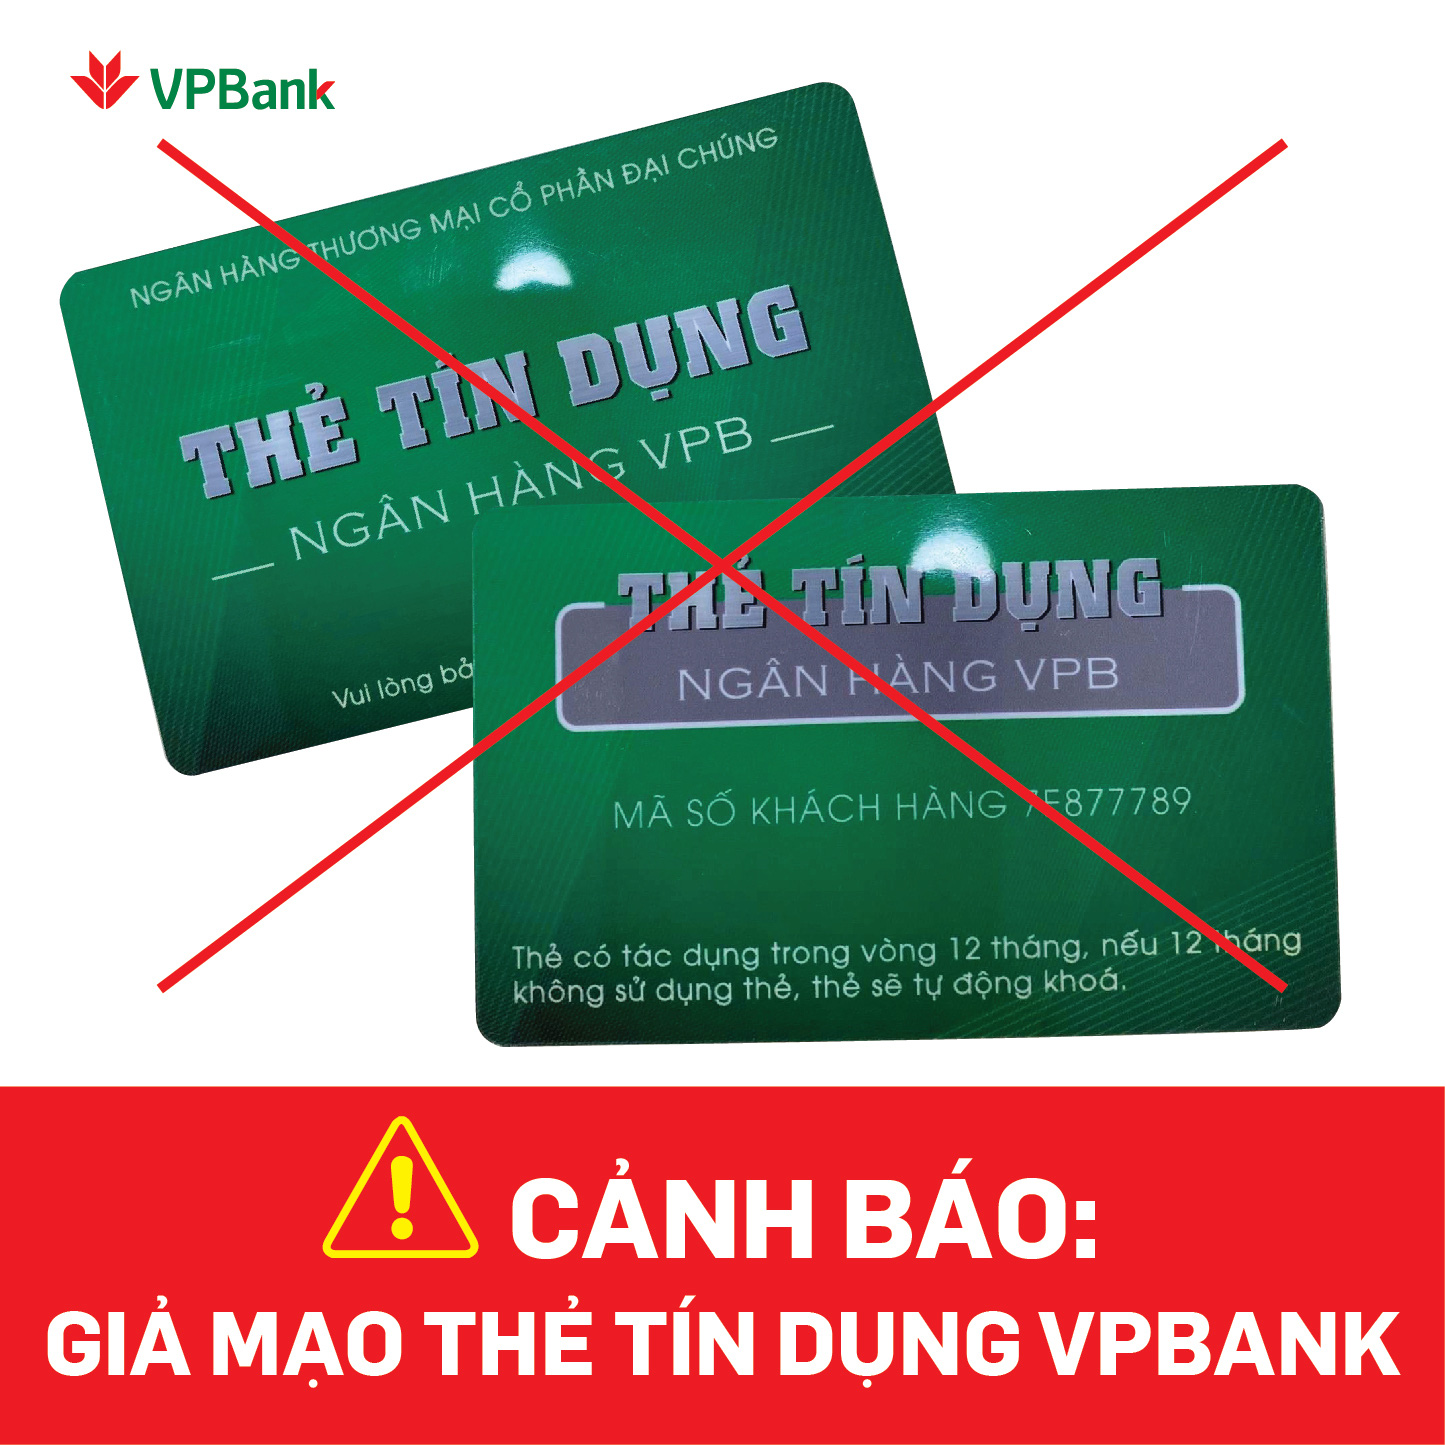 Ngân hàng VPBank lừa đảo là thông tin rúng động khiến cộng đồng mạng đang xôn xao